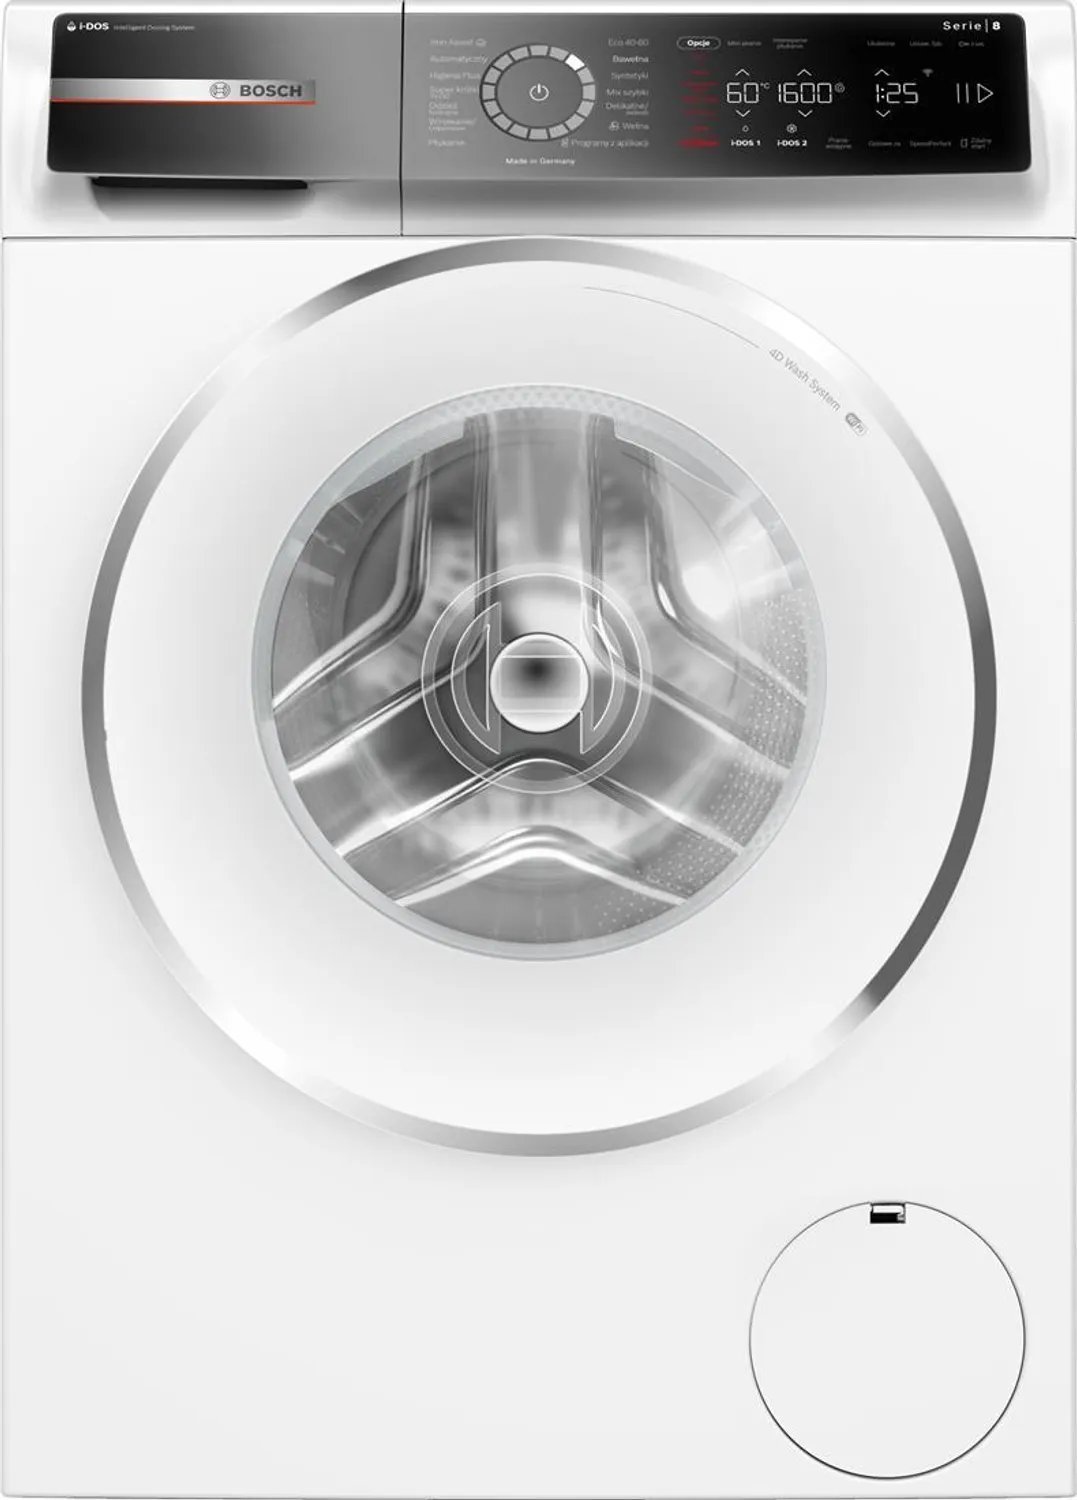 Masini de spalat rufe - Mașină de spălat rufe Bosch WGB256A0PL,alb